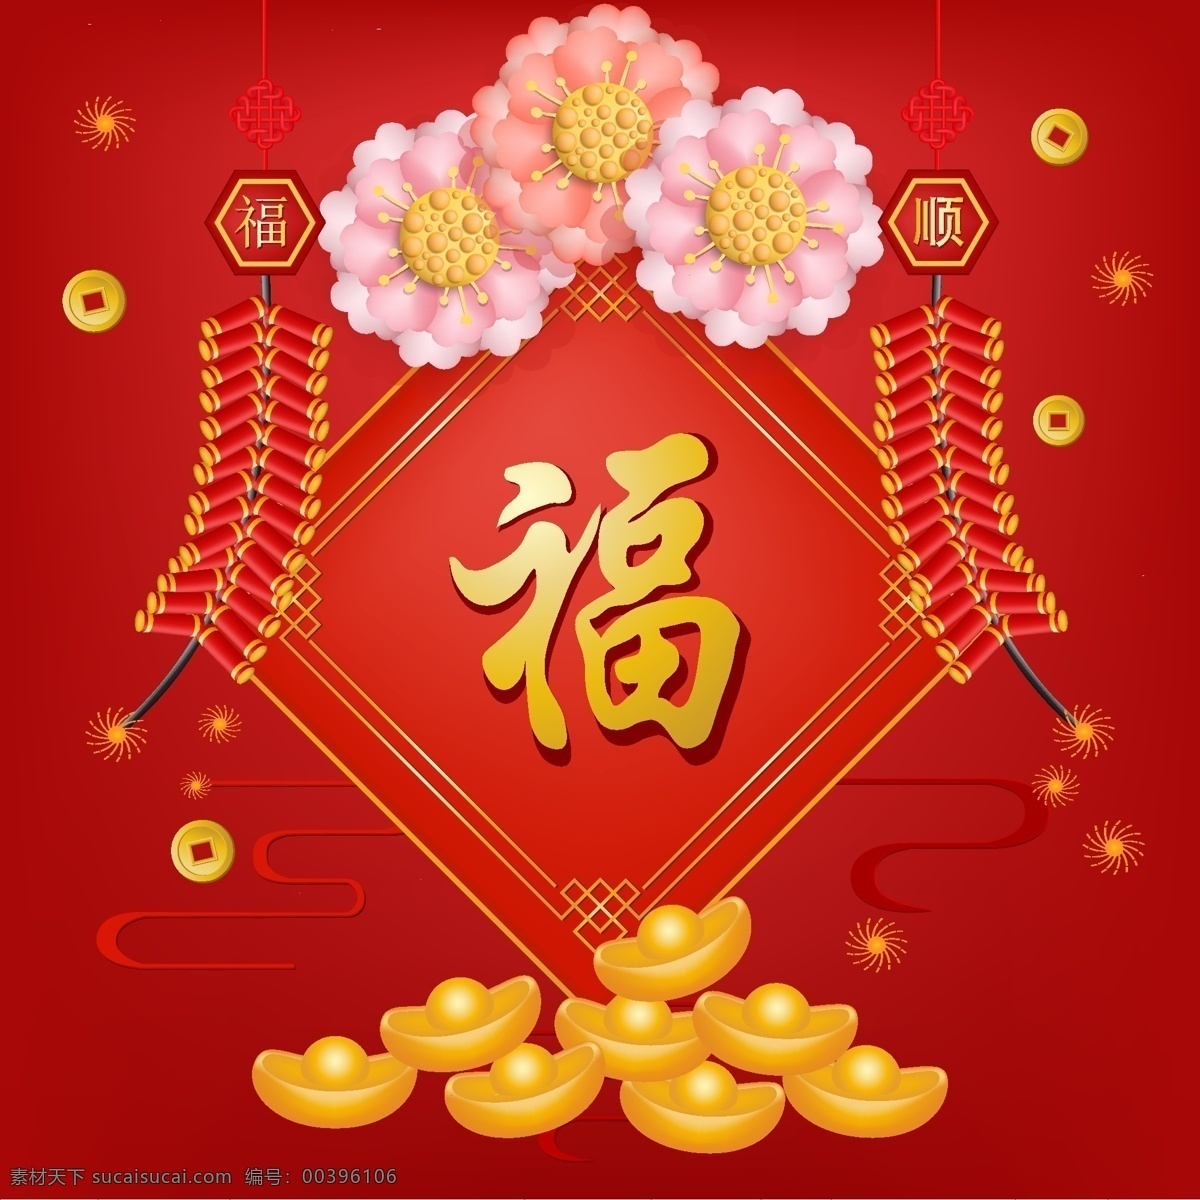 新年背景图片 新年背景 新年海报 中国年 新年快乐 新年元素 中国风 元旦 灯笼 红色 节日 喜庆 元宝 2021 新年